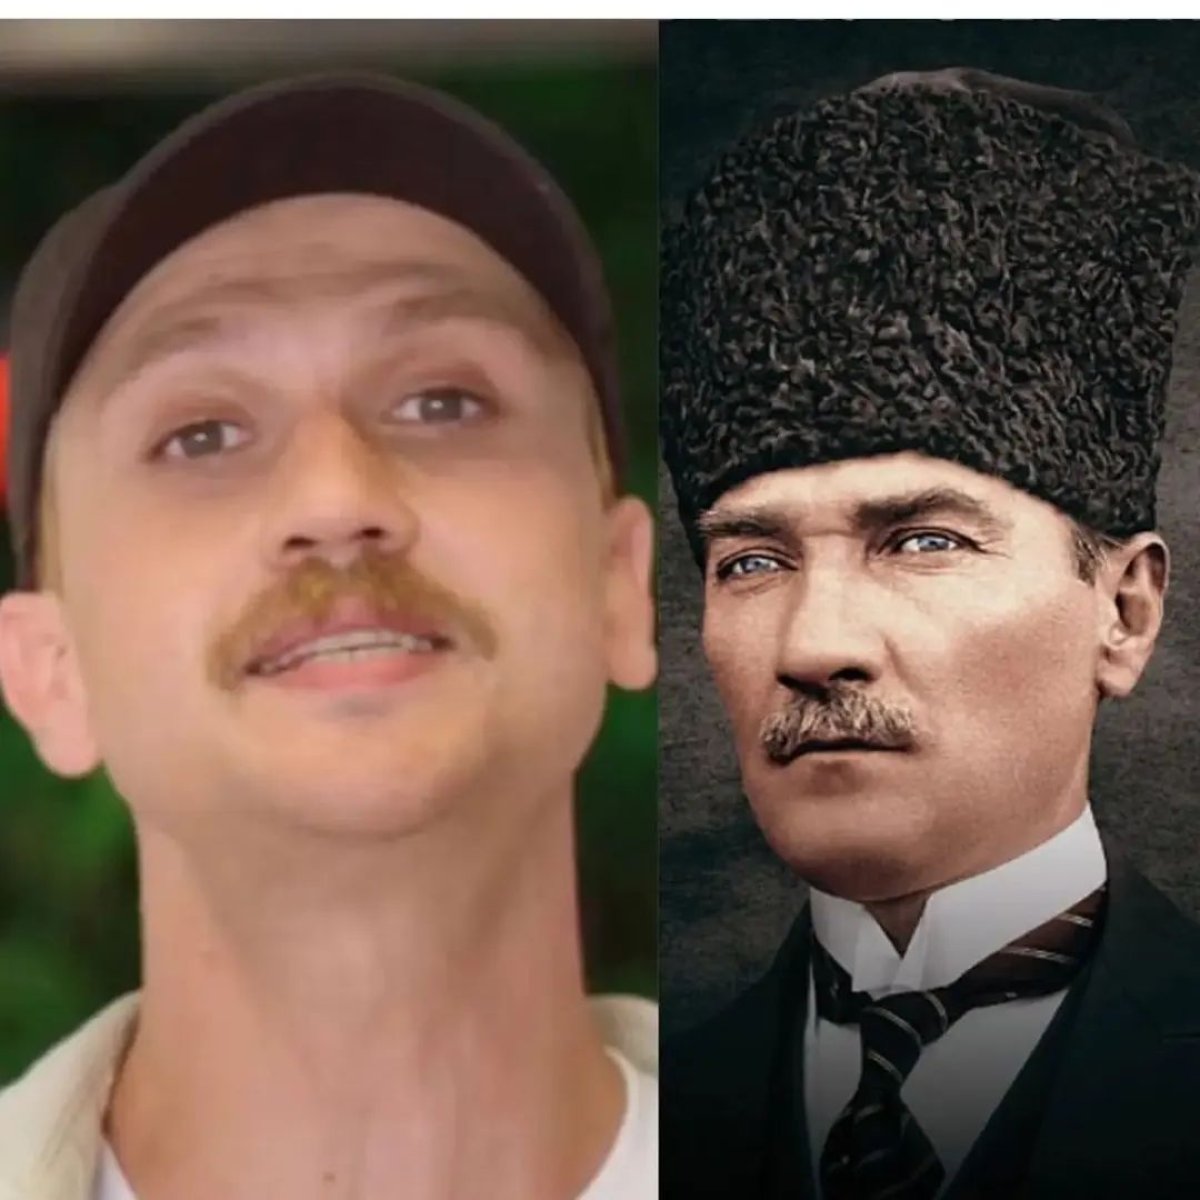 Aras Bulut İynemli, Atatürk rolü için saçlarını ve bıyıklarını sarıya boyattı #1